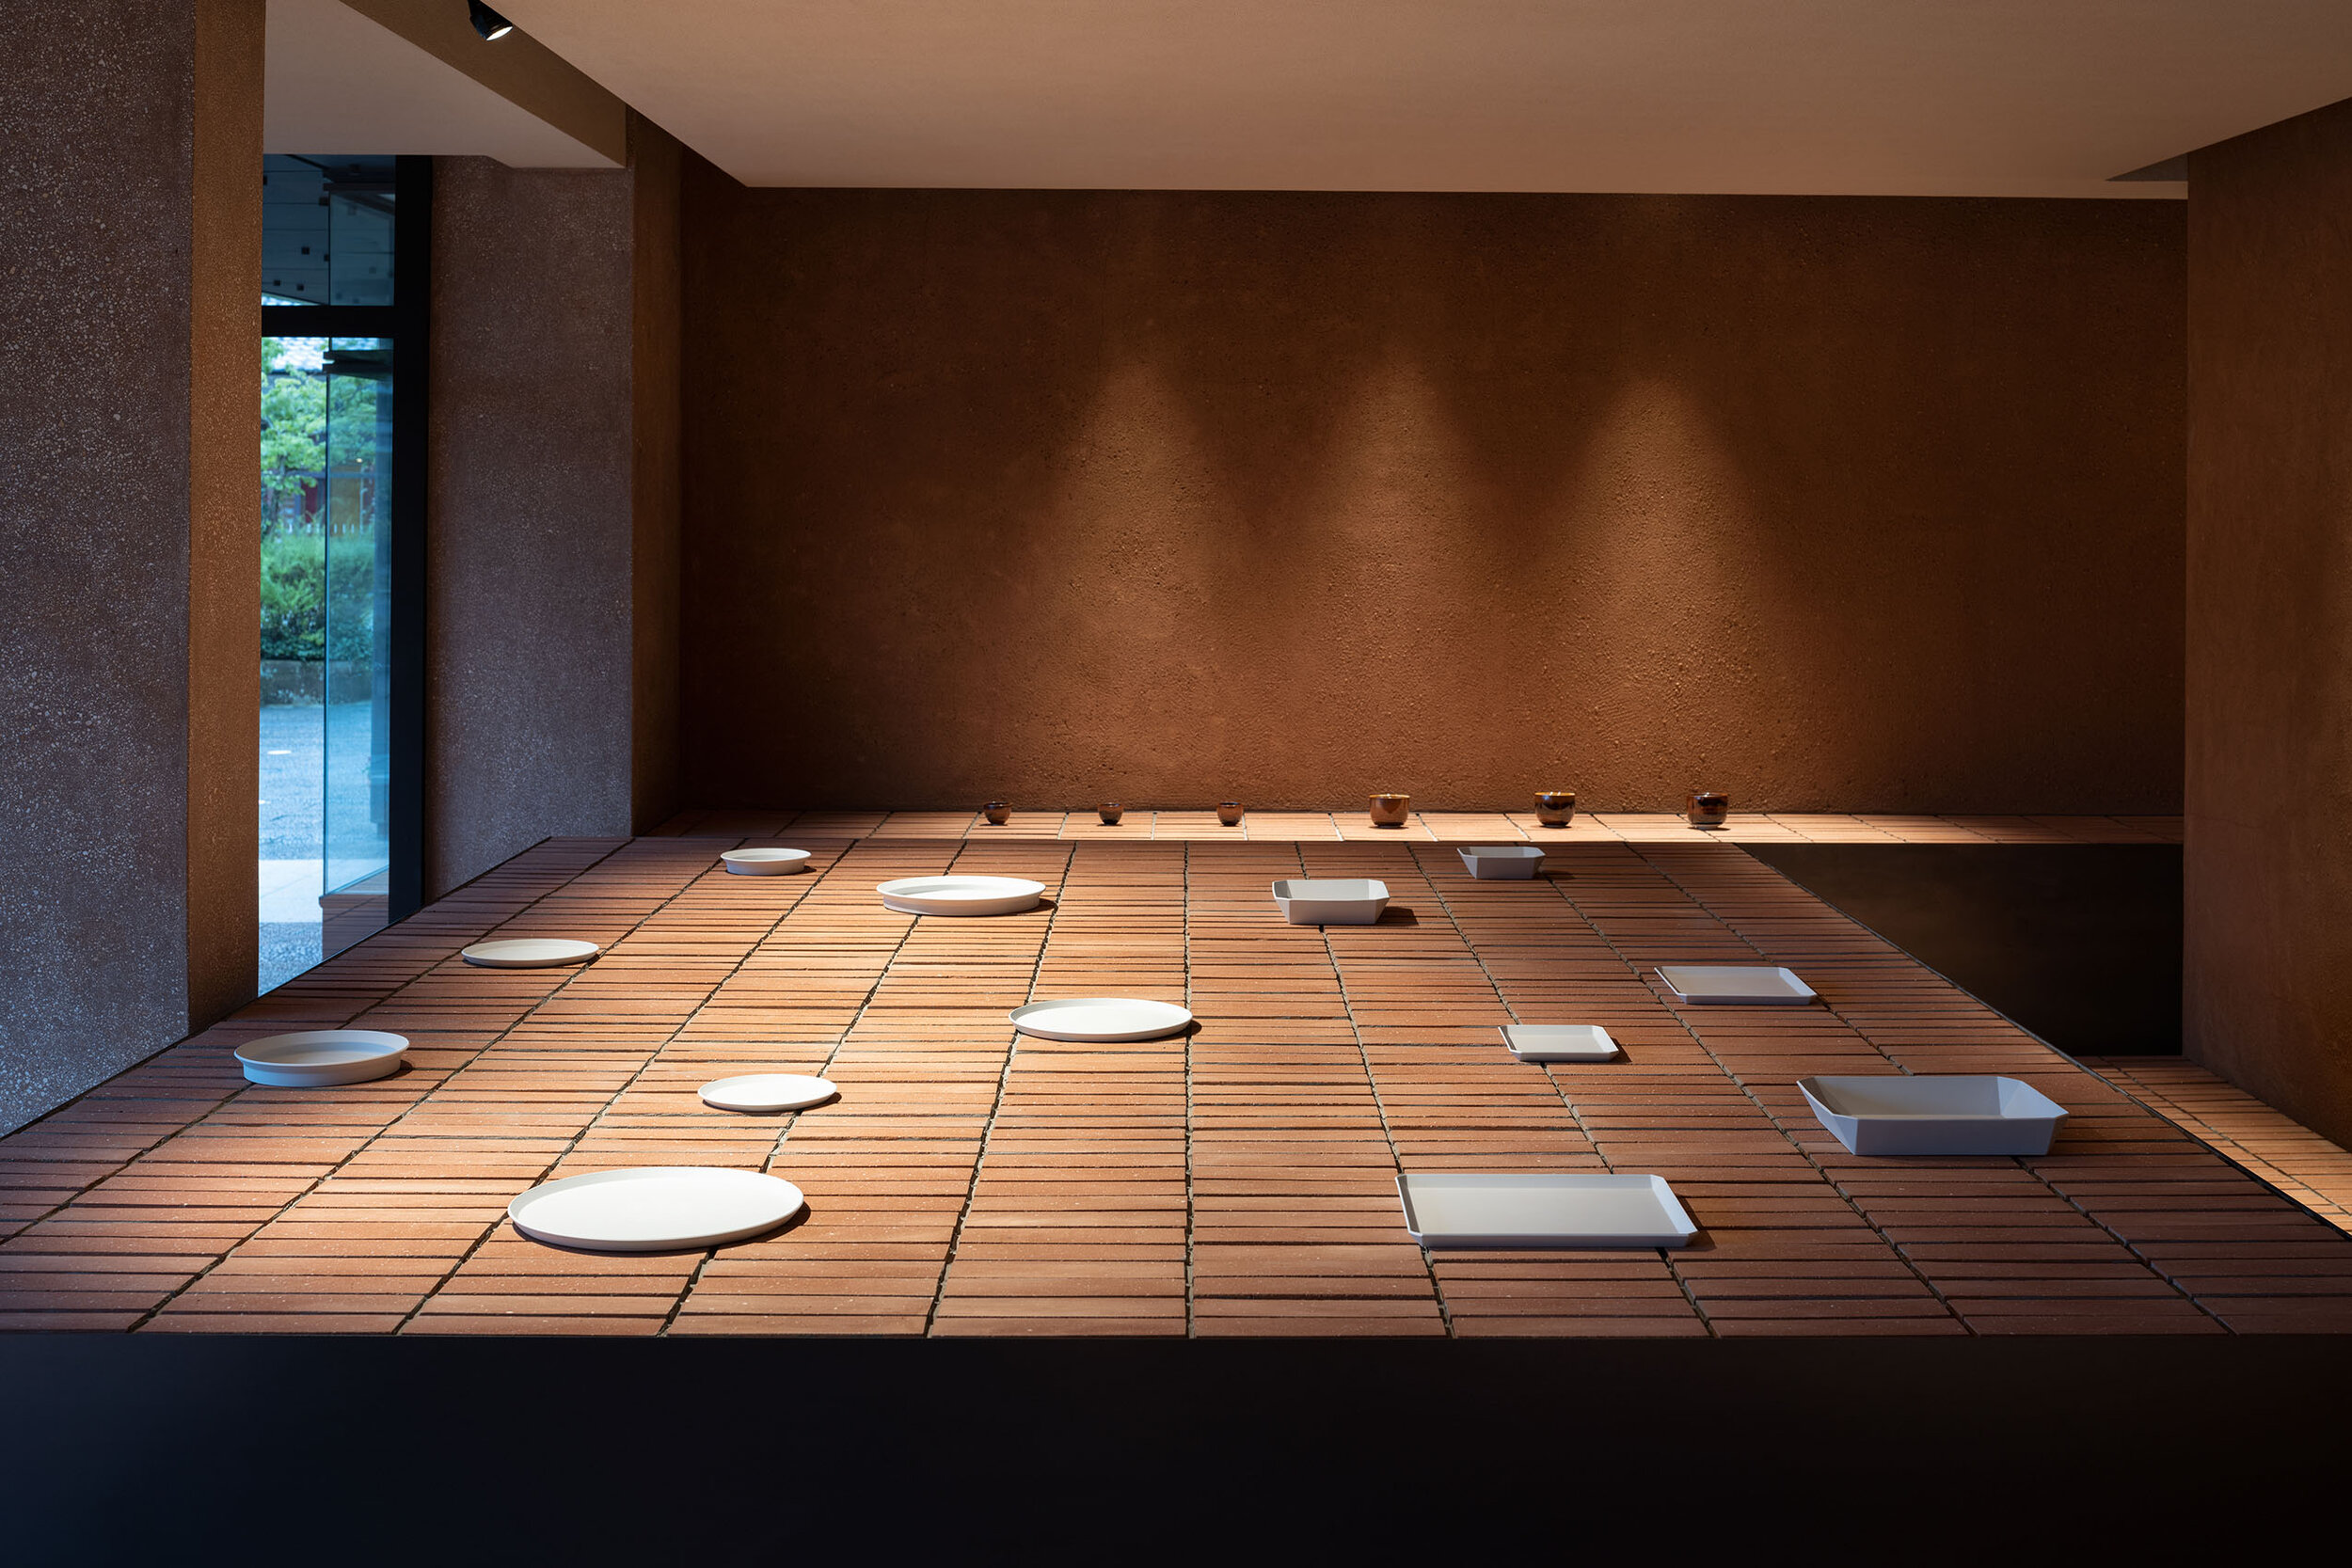  display table of 1616/arita japan showroom designed by Teruhiro Yanagihara Studio 